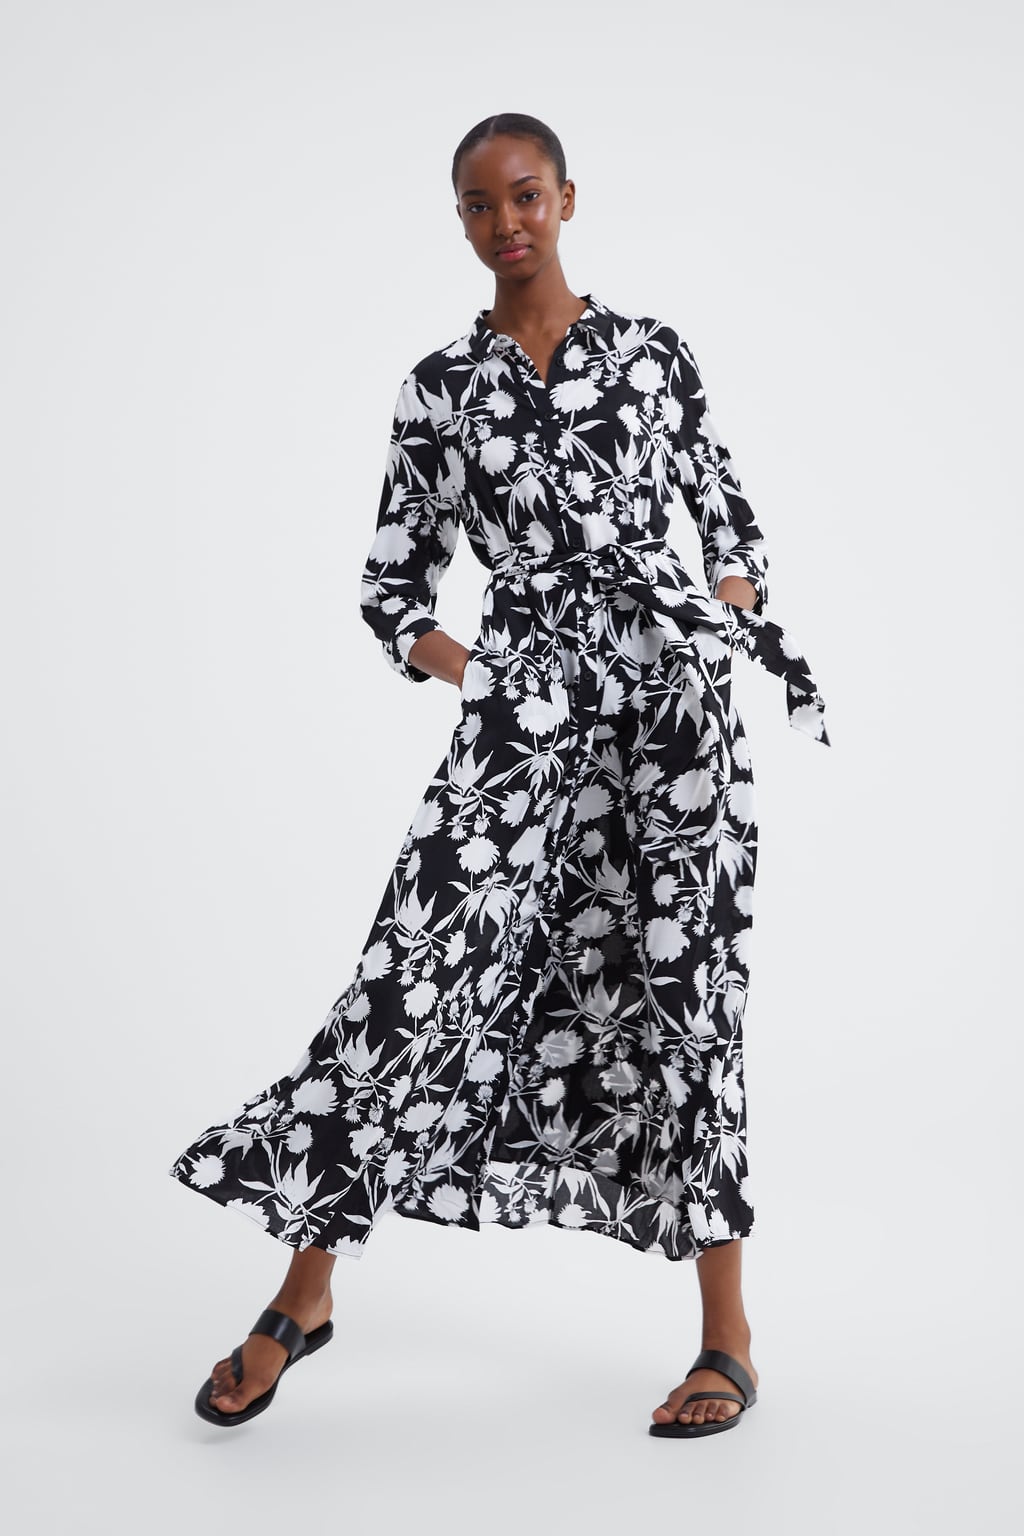 Vestidos Zara primavera verano 2019, las tendencias para renovar armario Modalia.es